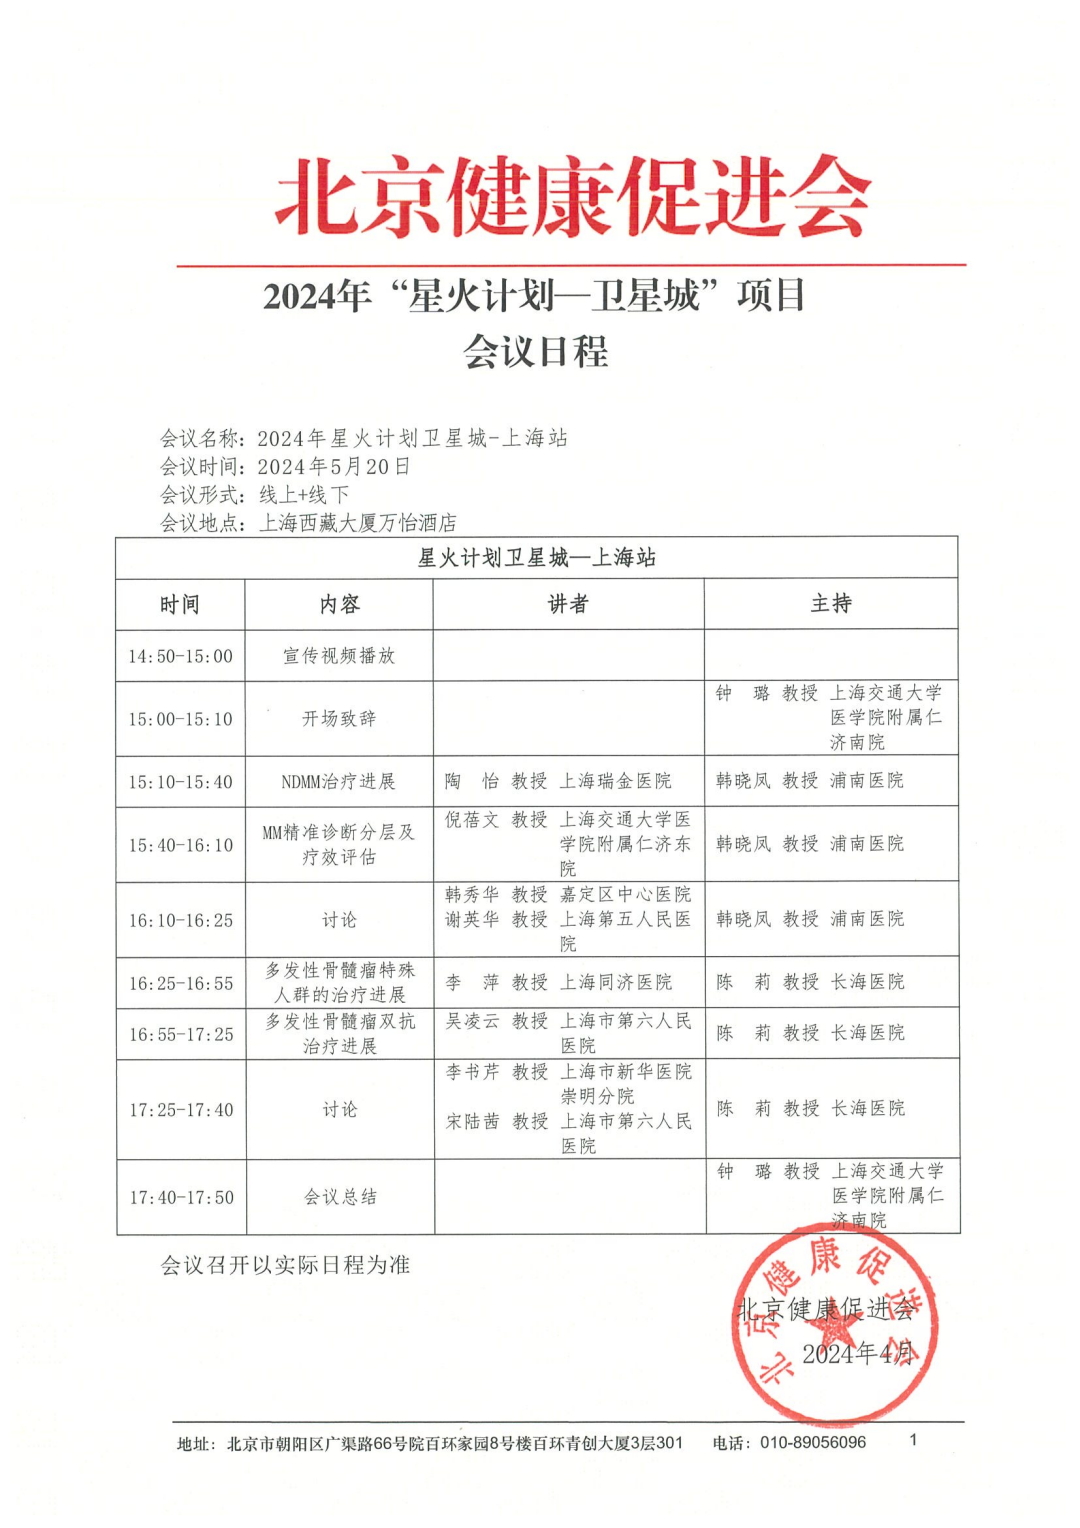 2024“星火计划卫星城-上海站”会议日程_0.jpeg